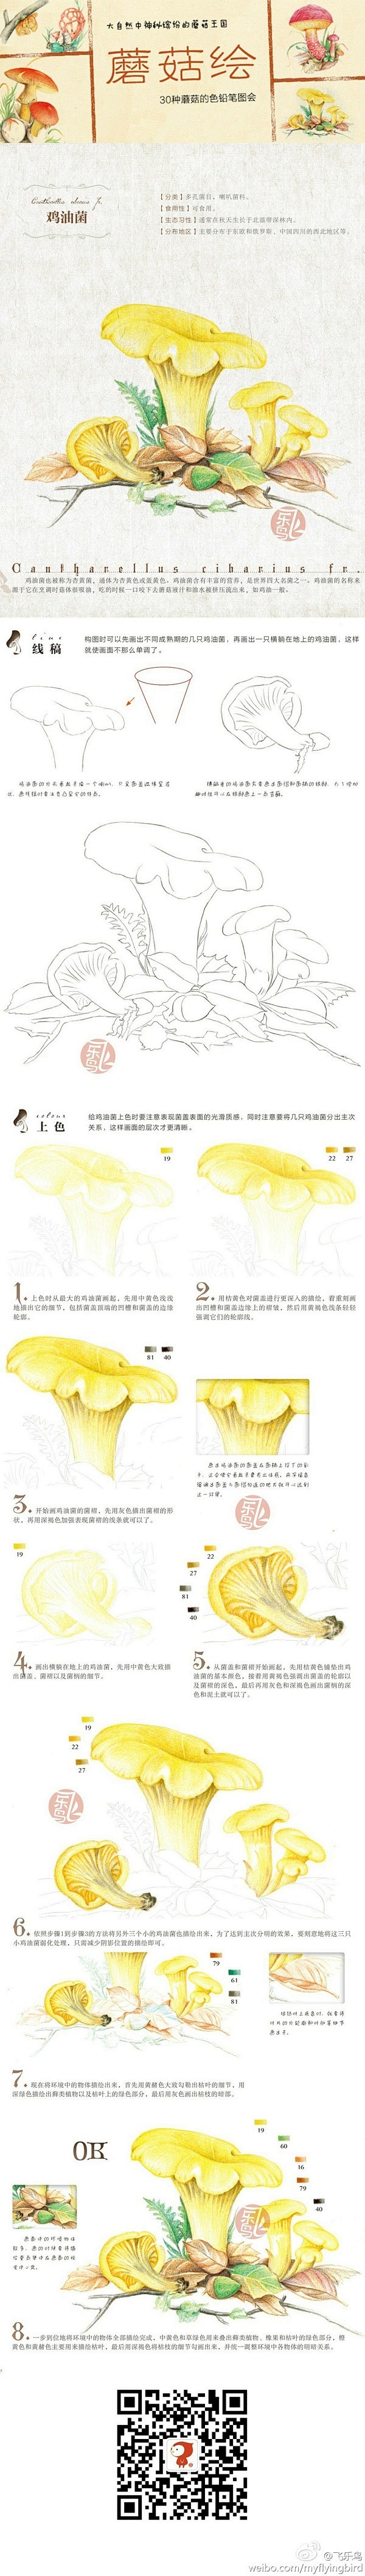 彩铅 步骤 教程蘑菇